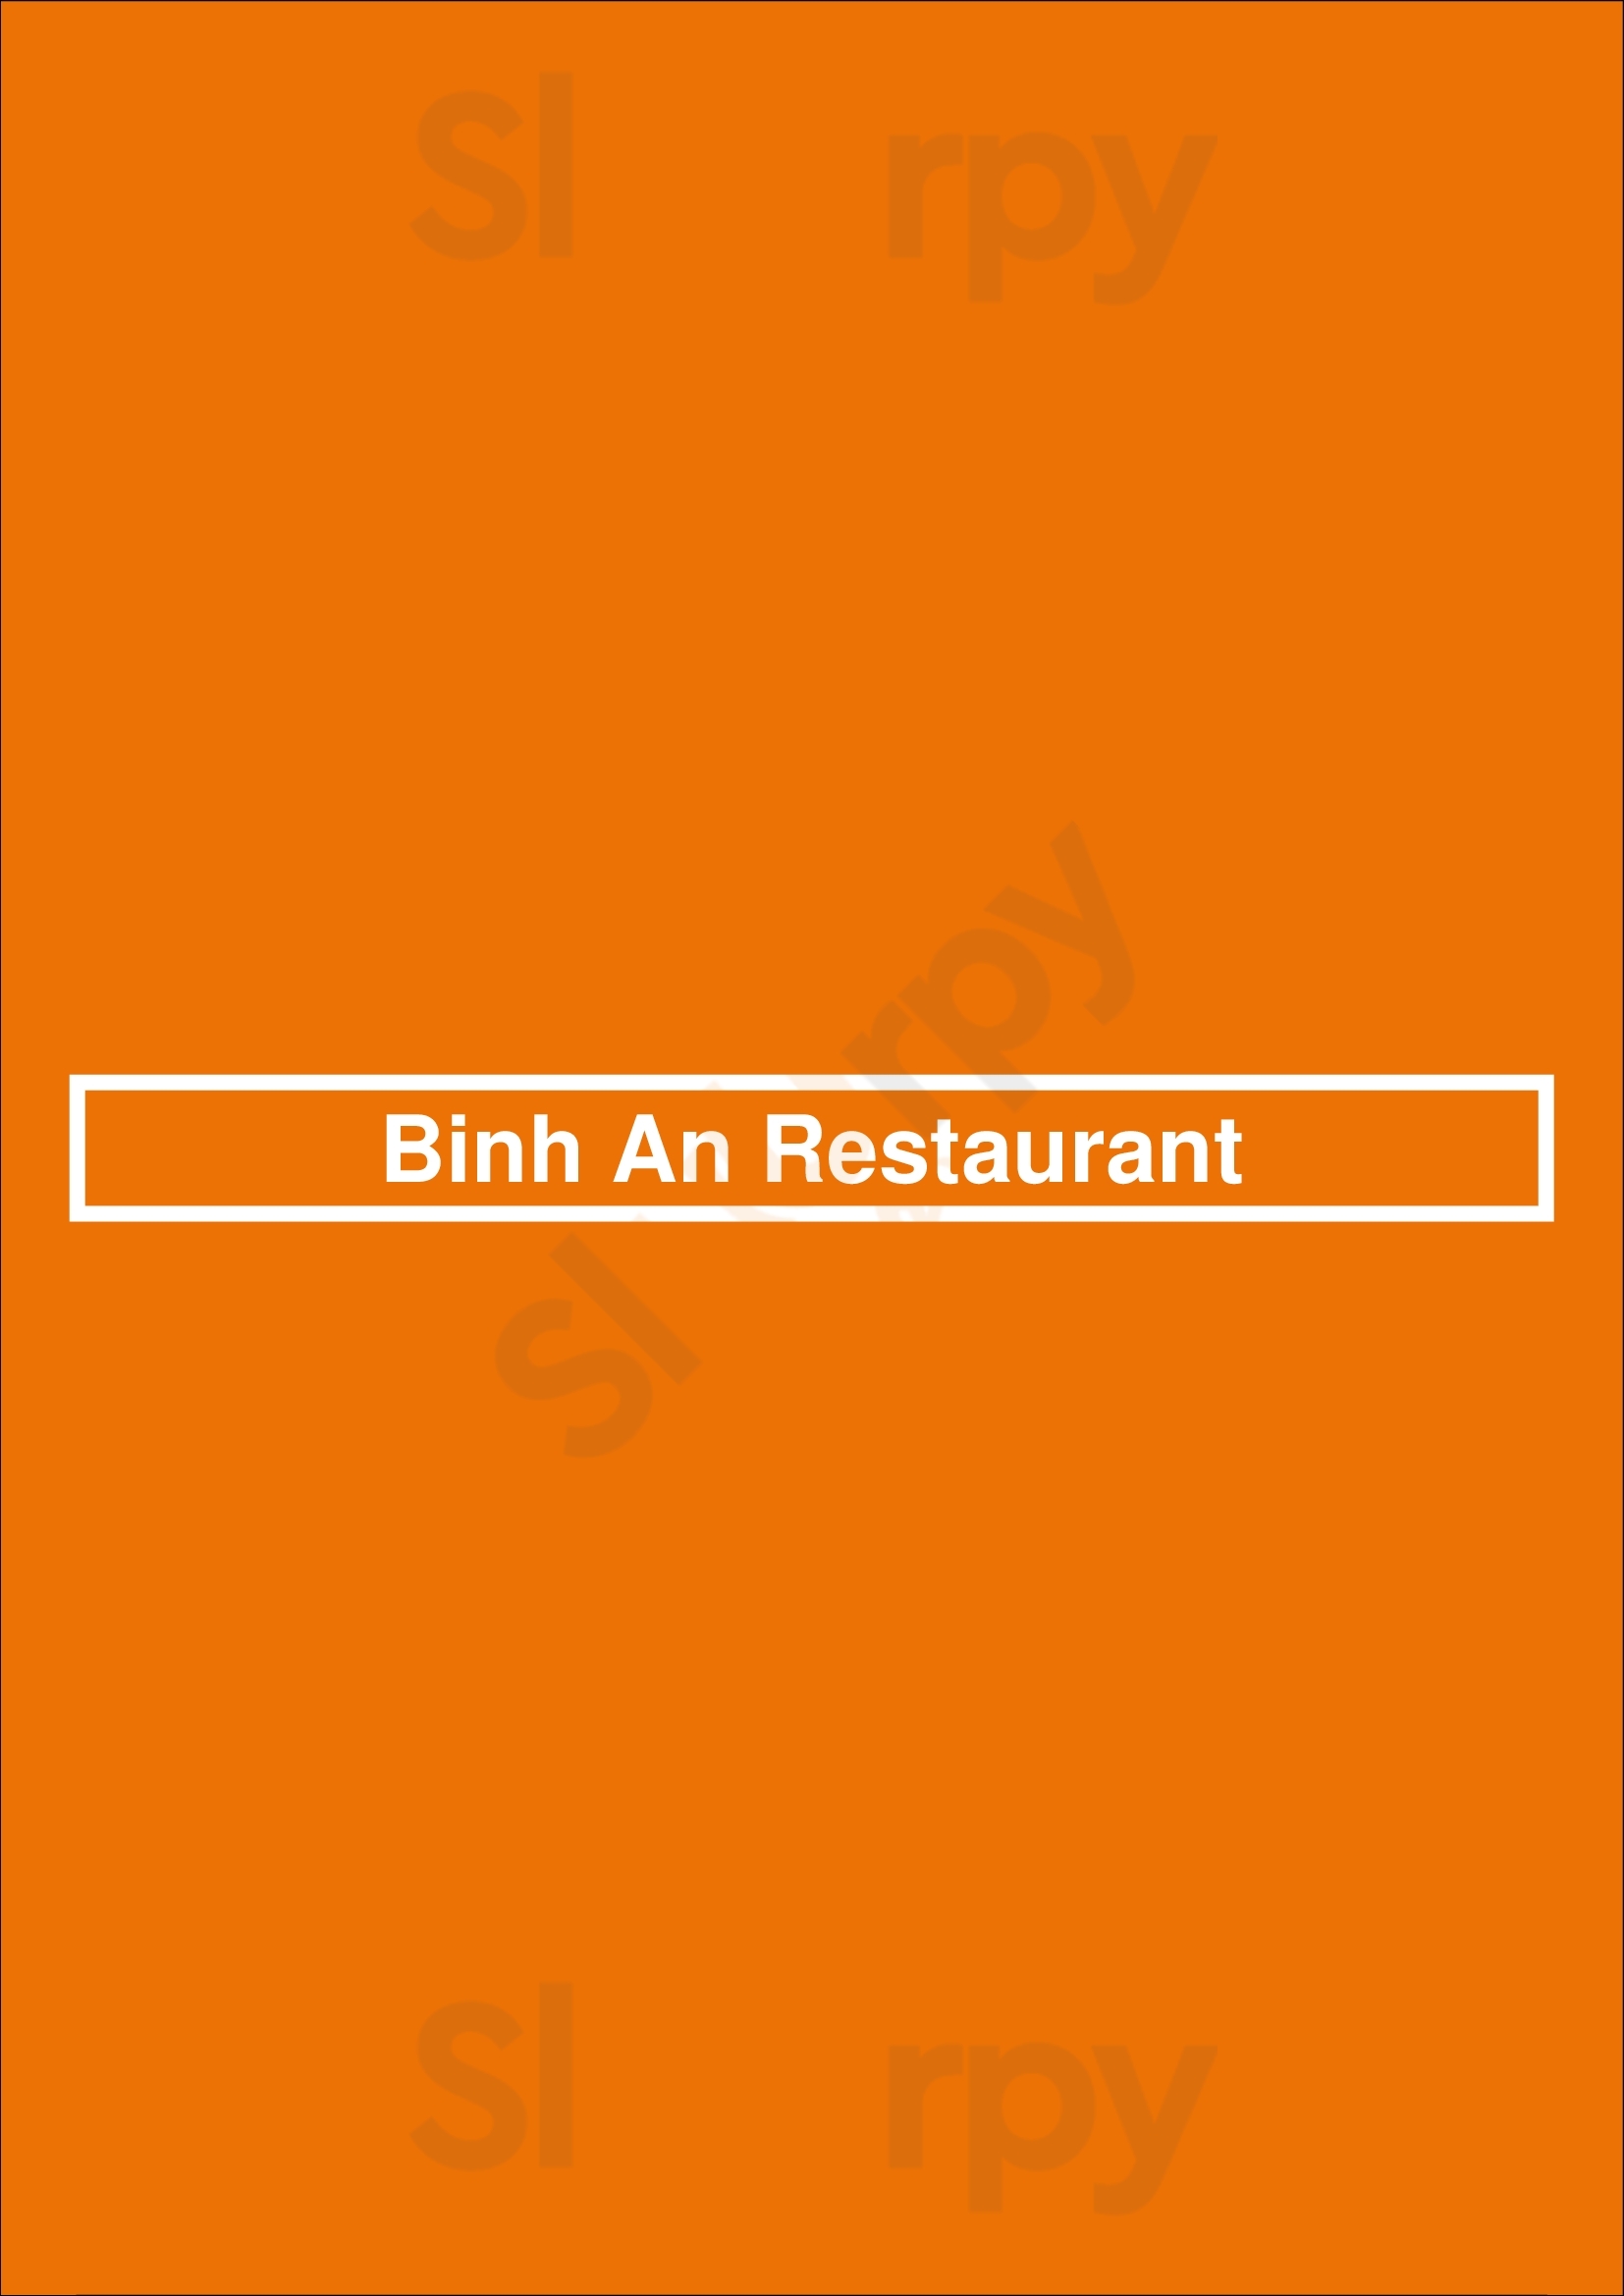 Binh An Restaurant Winnipeg Menu - 1